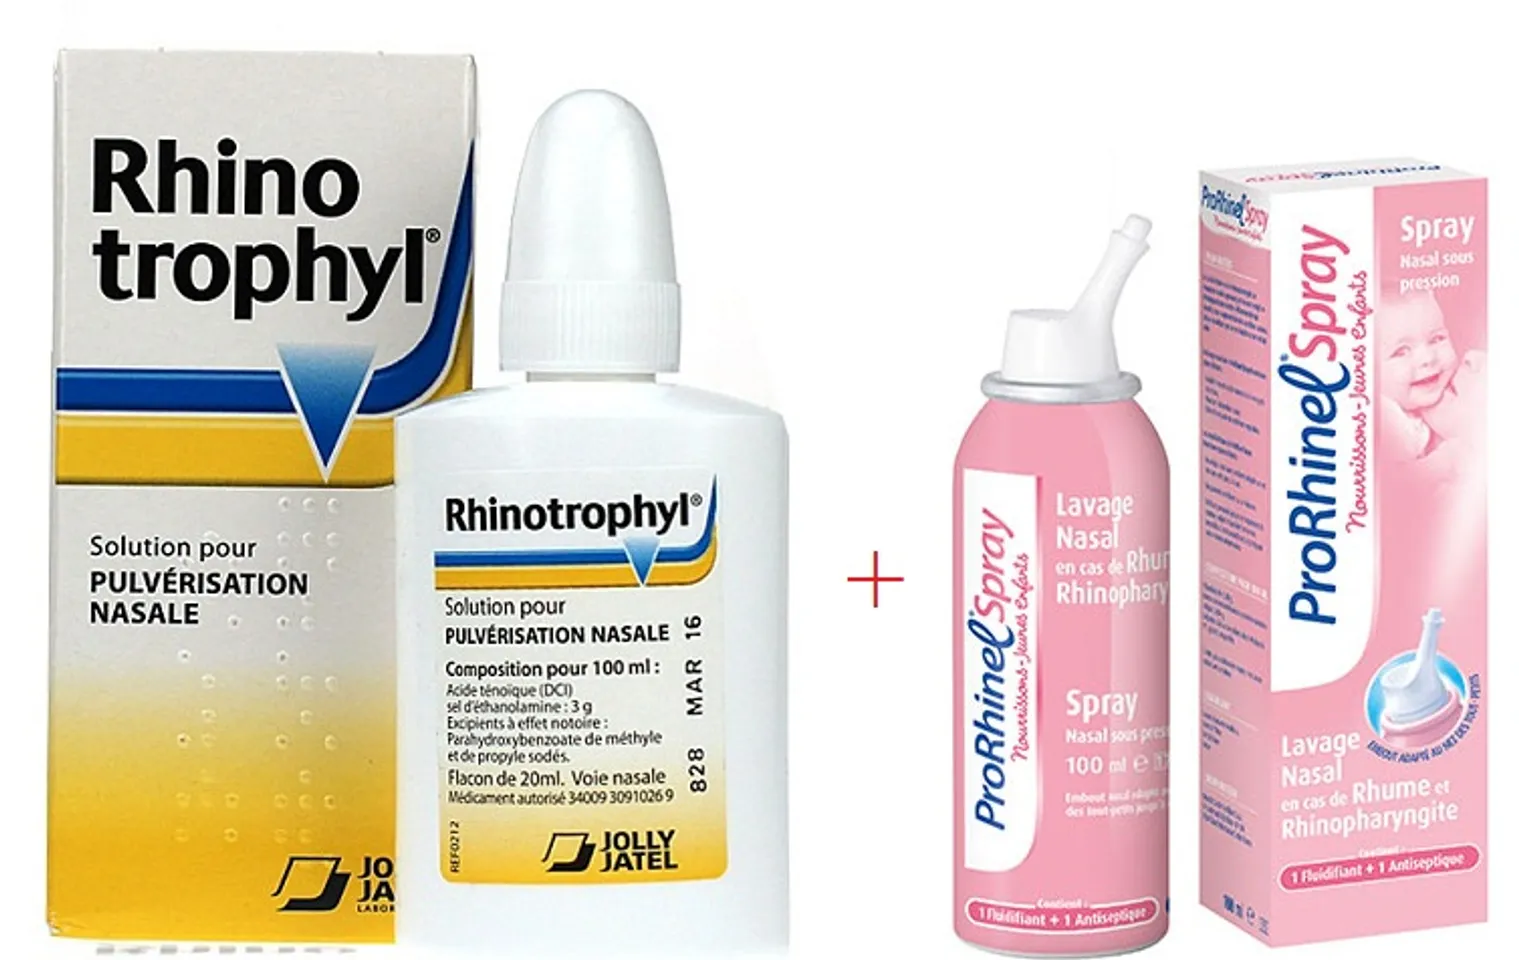 Nước xịt mũi Prorhinel Spray và nước nhỏ mũi Rhinotrophyl hỗ trợ trẻ bị viêm mũi, chảy nước mũi, cảm cúm